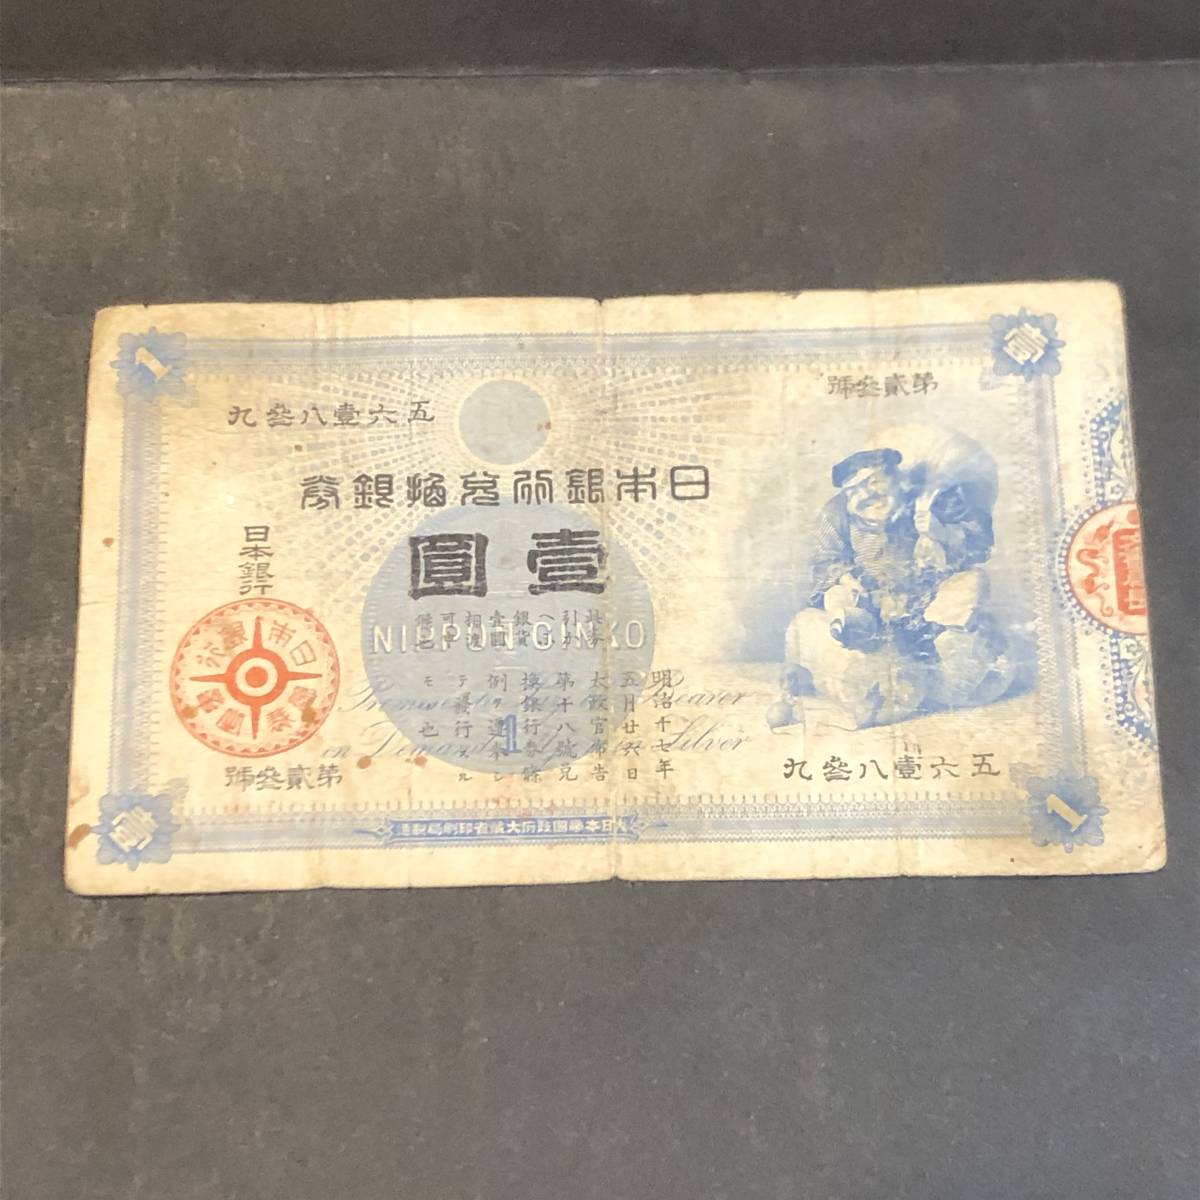 1円紙幣